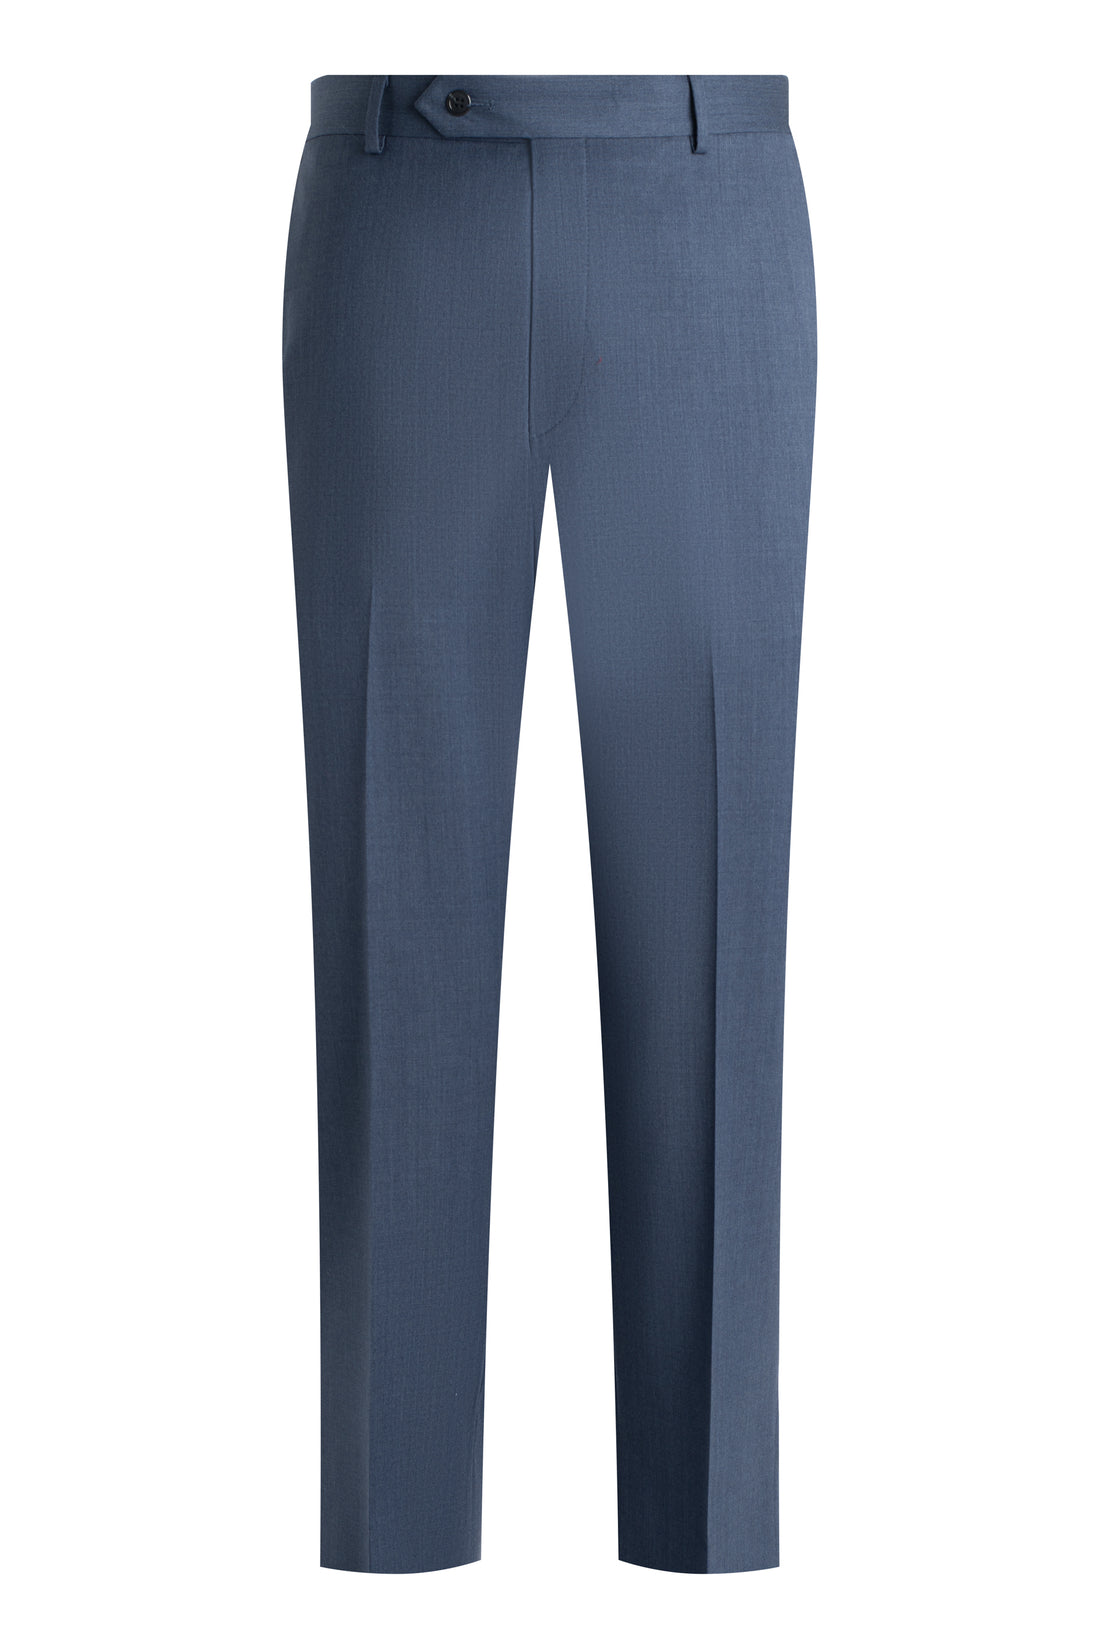 Louis Vuitton Side belt moleskin Pants (Trousers) Brown 42